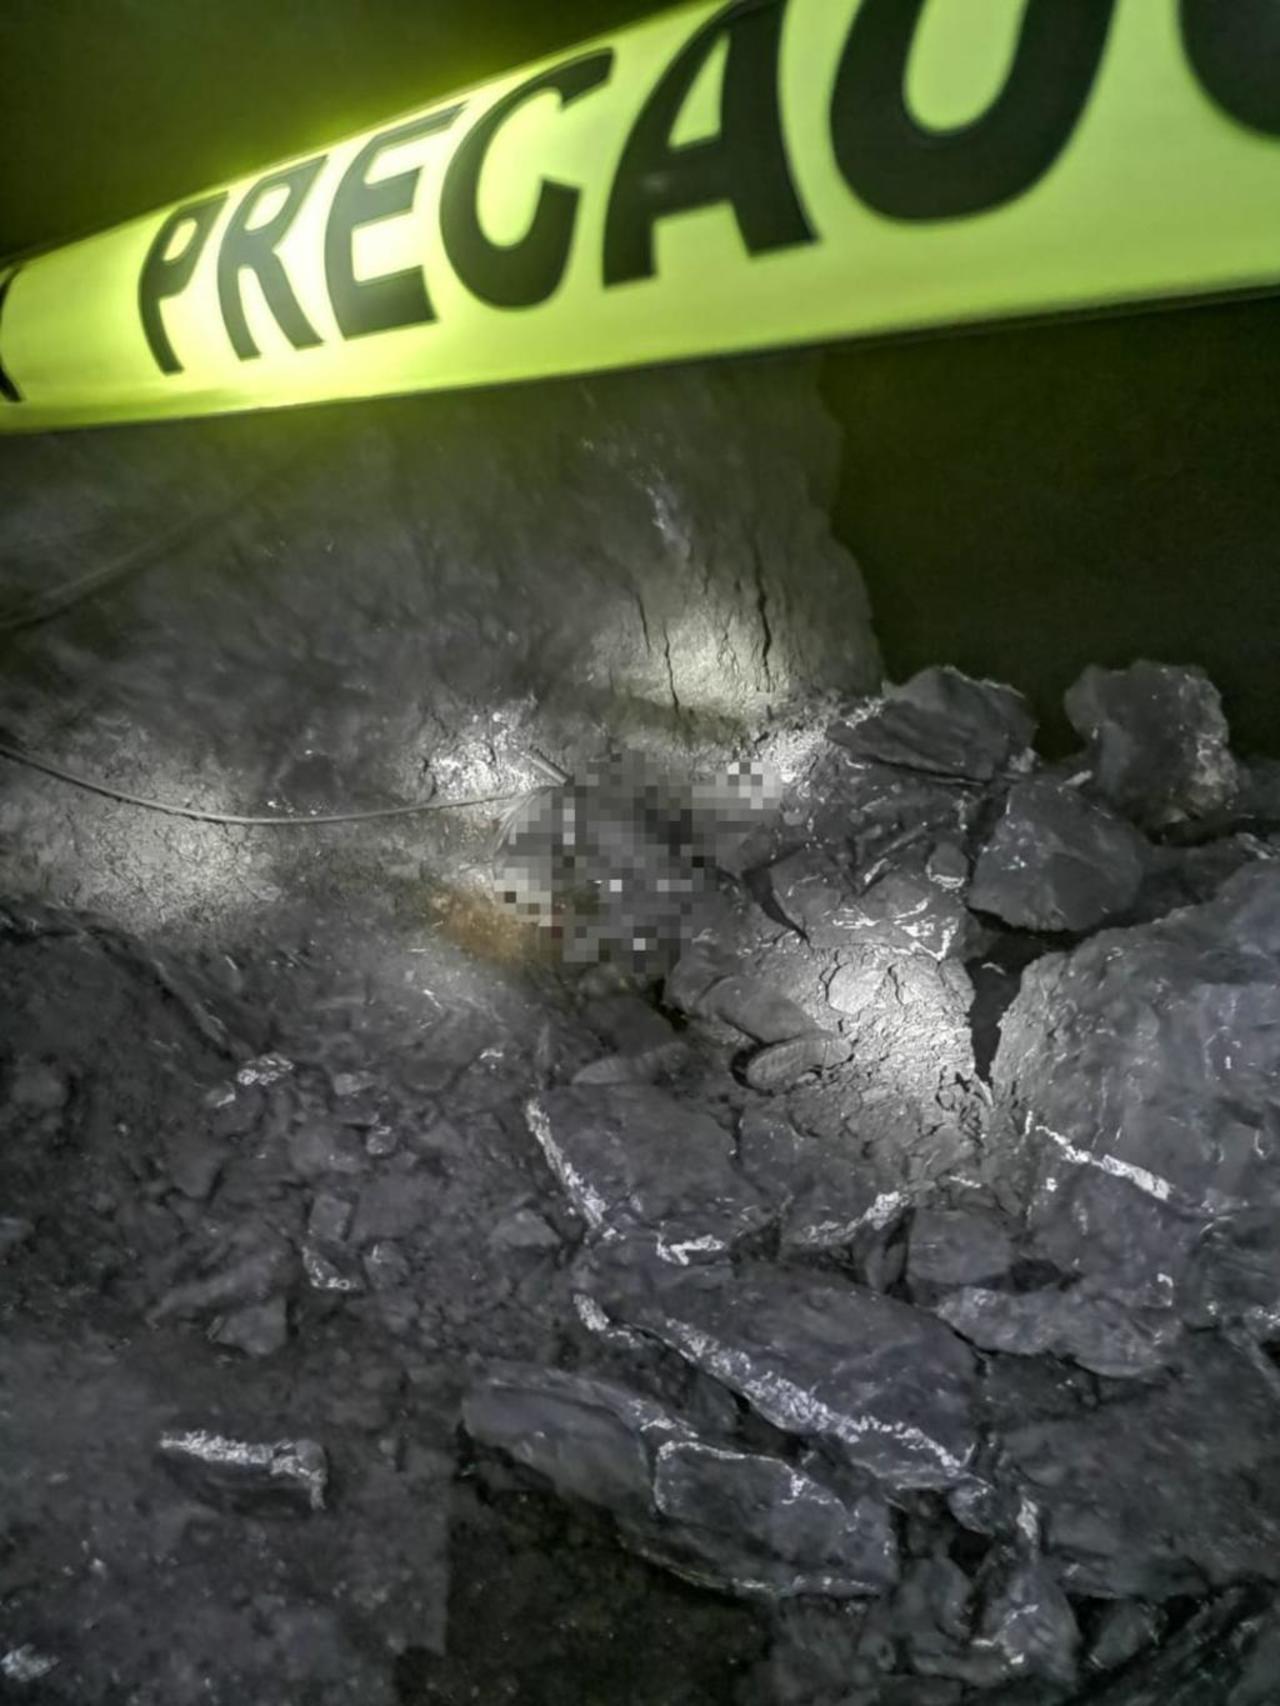 La mina La Pasión, productora de plomo y zinc, que se ubica en tierras del ejido Acebuches, a dos horas y media del municipio de Ocampo, el 19 de julio pasado a las 4 de la mañana sufrió un derrumbe con fatales consecuencias. (ARCHIVO)